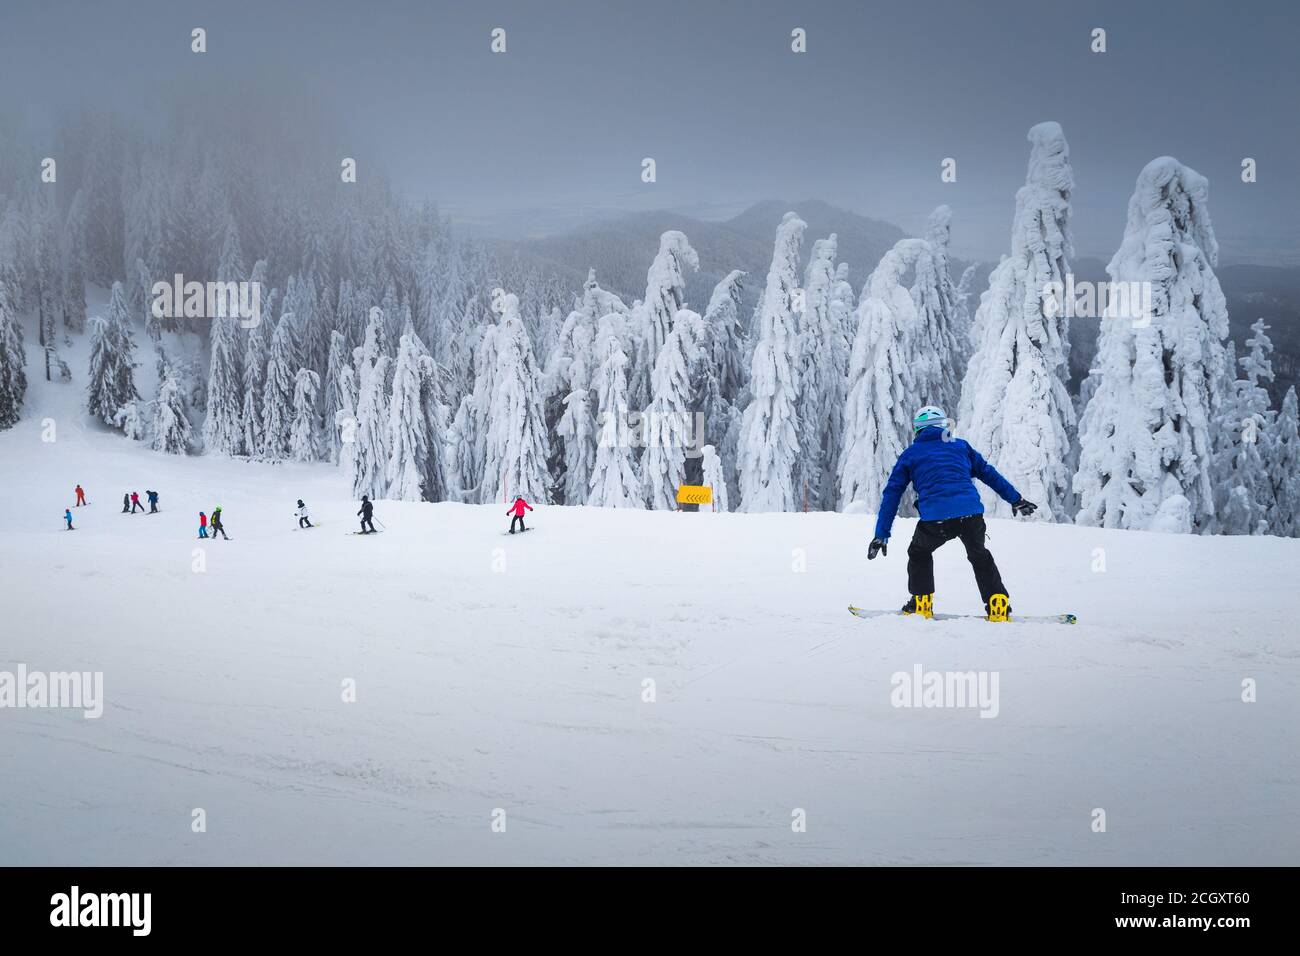 Superbes arbres enneigés et fantastique station de ski d'hiver. Skieurs et snowboarders actifs ski alpin dans la station de ski fabuleuse de Poiana Brasov, tr Banque D'Images